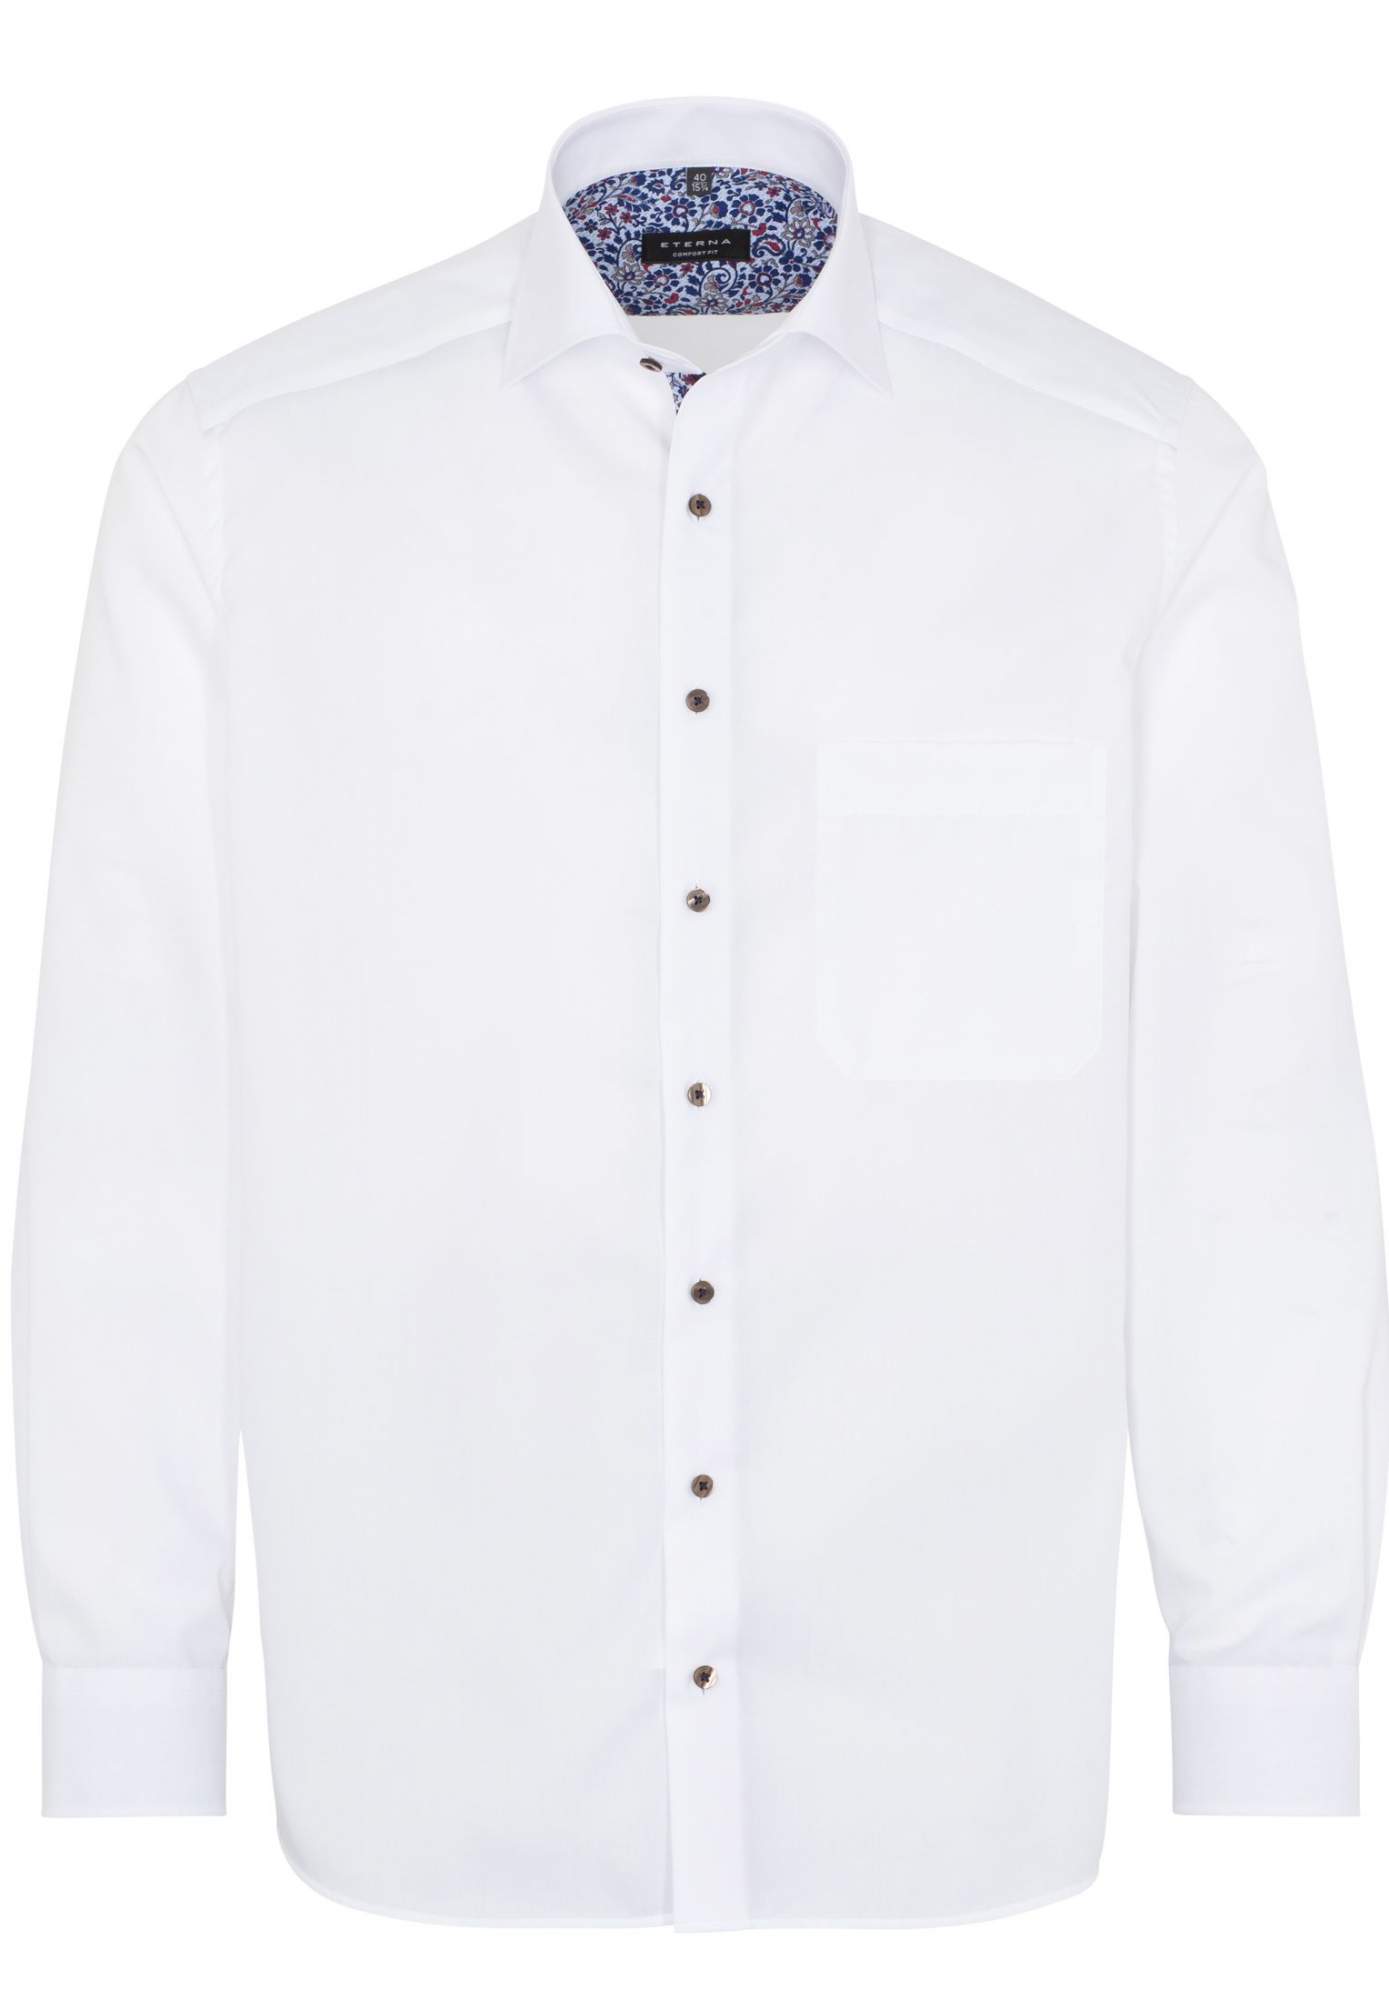 Рубашка мужская ETERNA 1300-00-E83K белая 41 - купить в Икона Стиля, цена на Мегамаркет